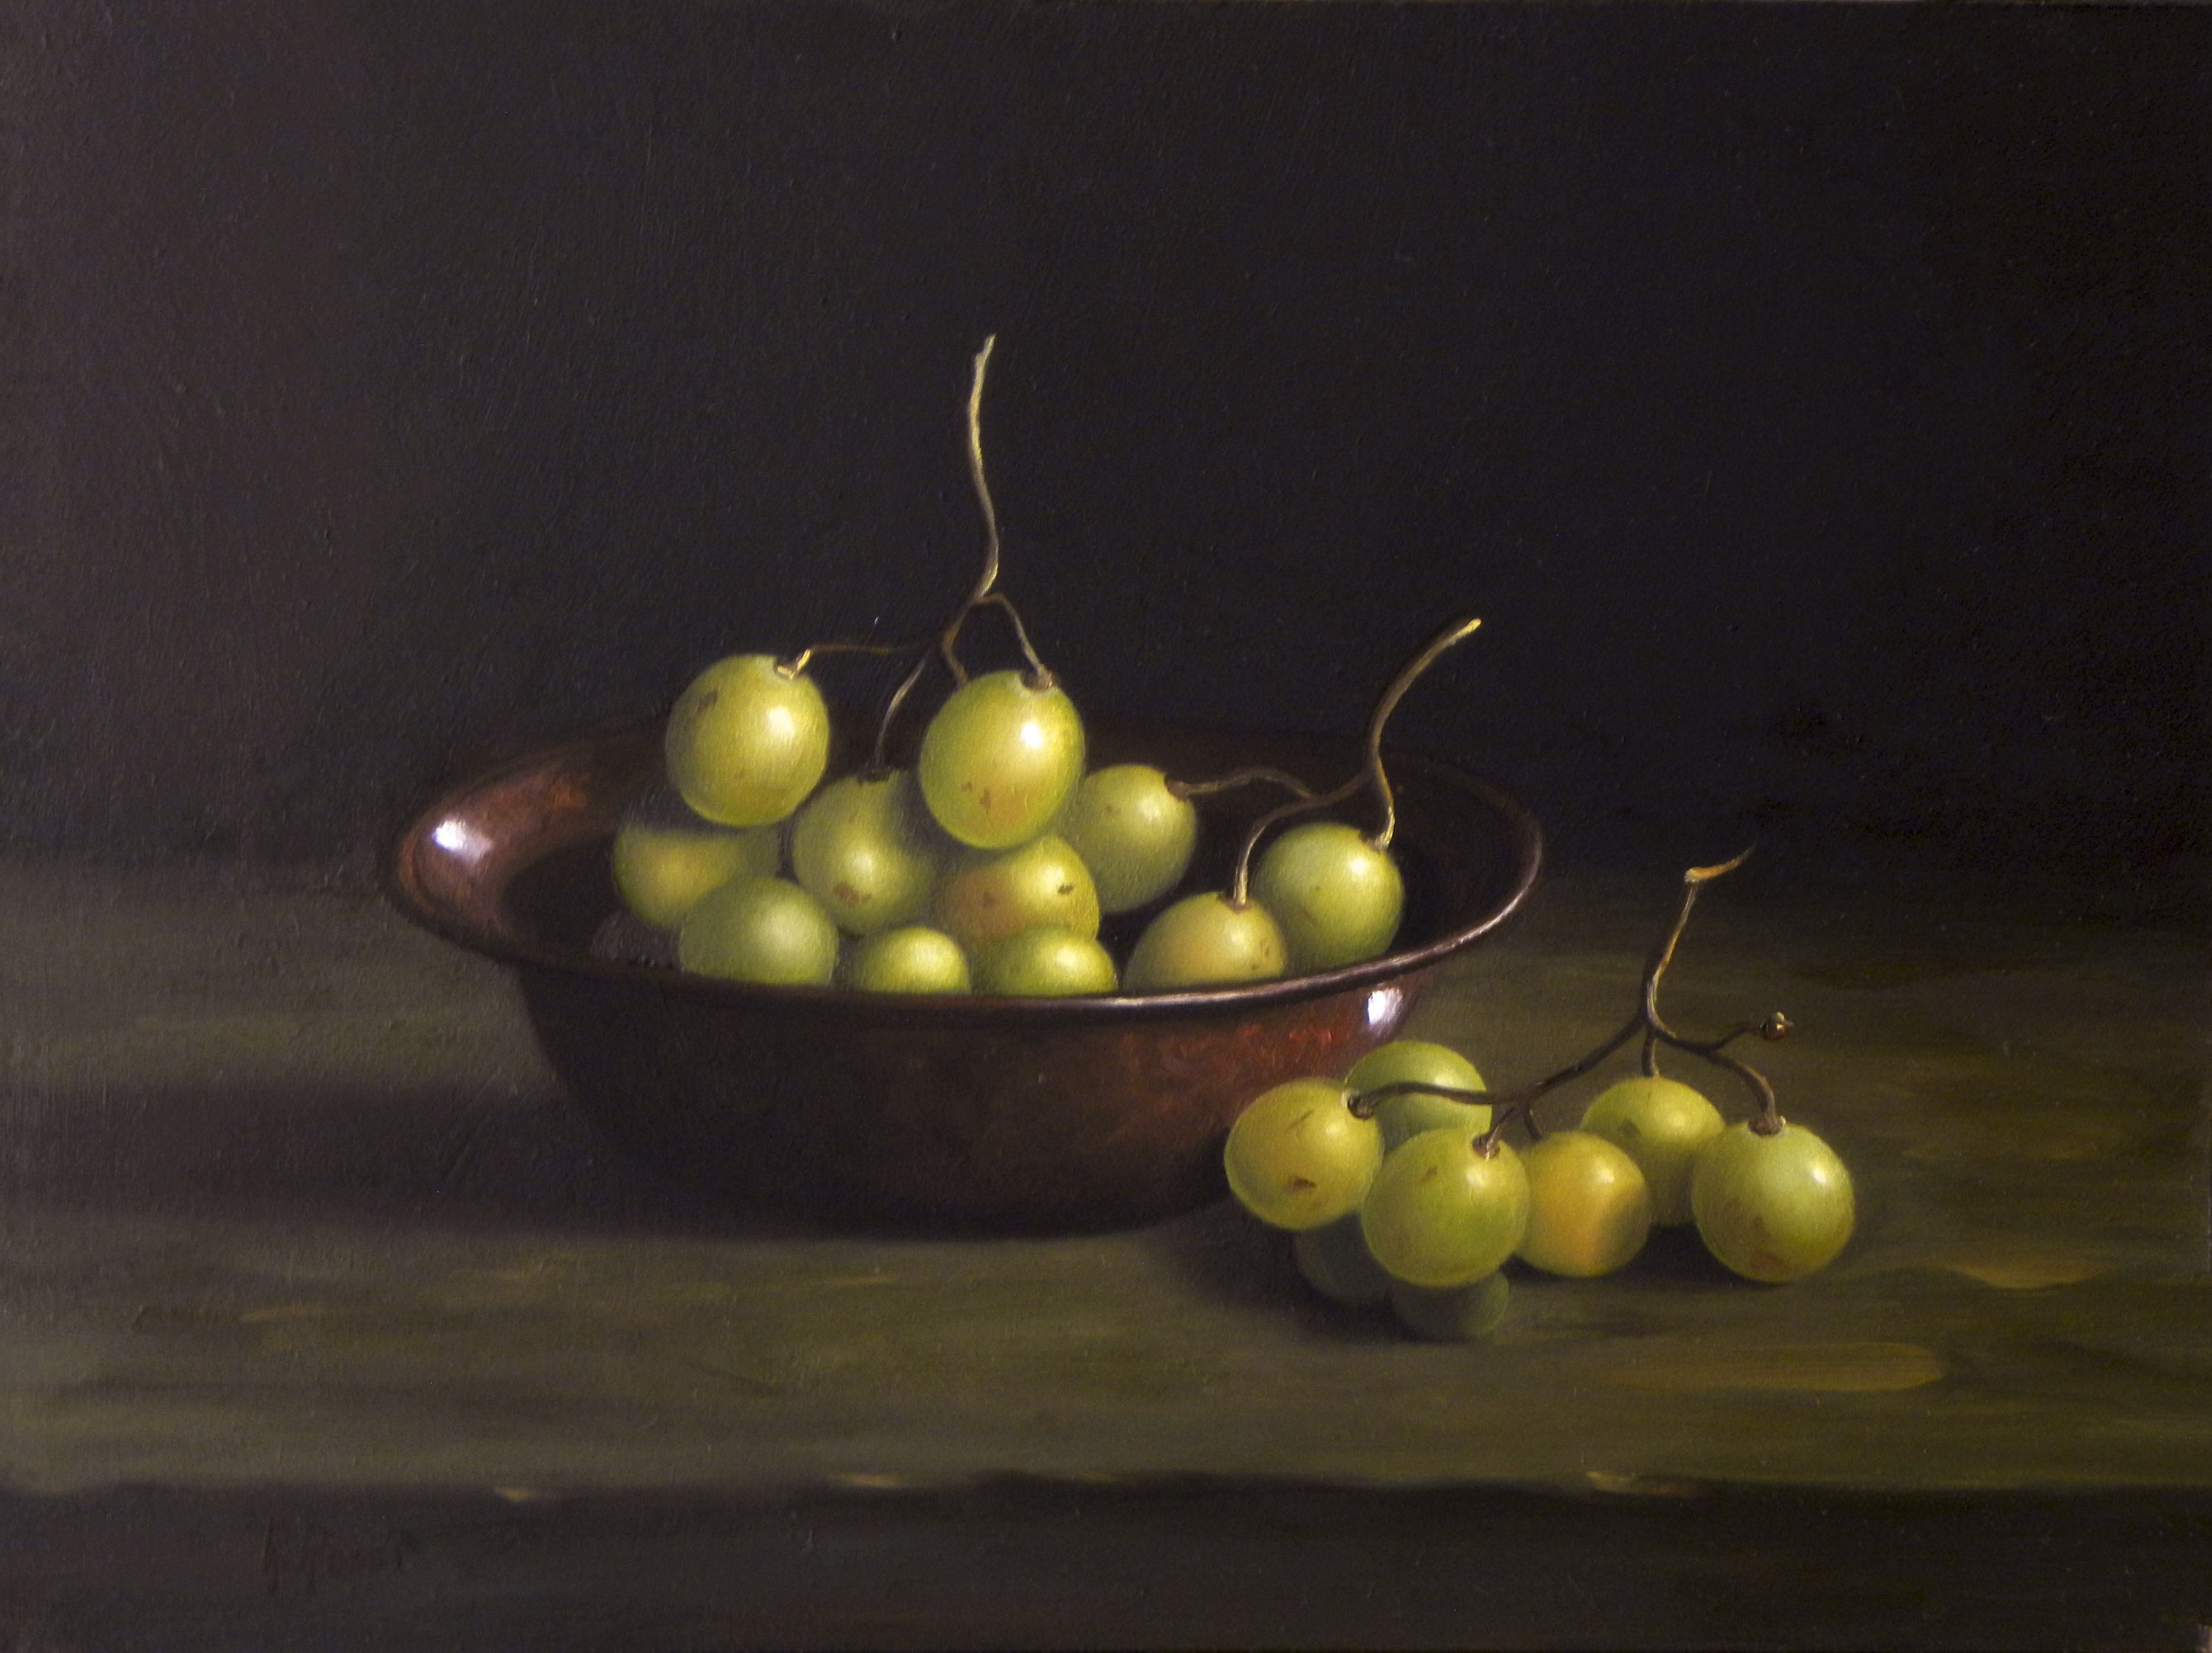 2015 roberta rossi – uva nella ciotola – olio su tavola – 18 x 24